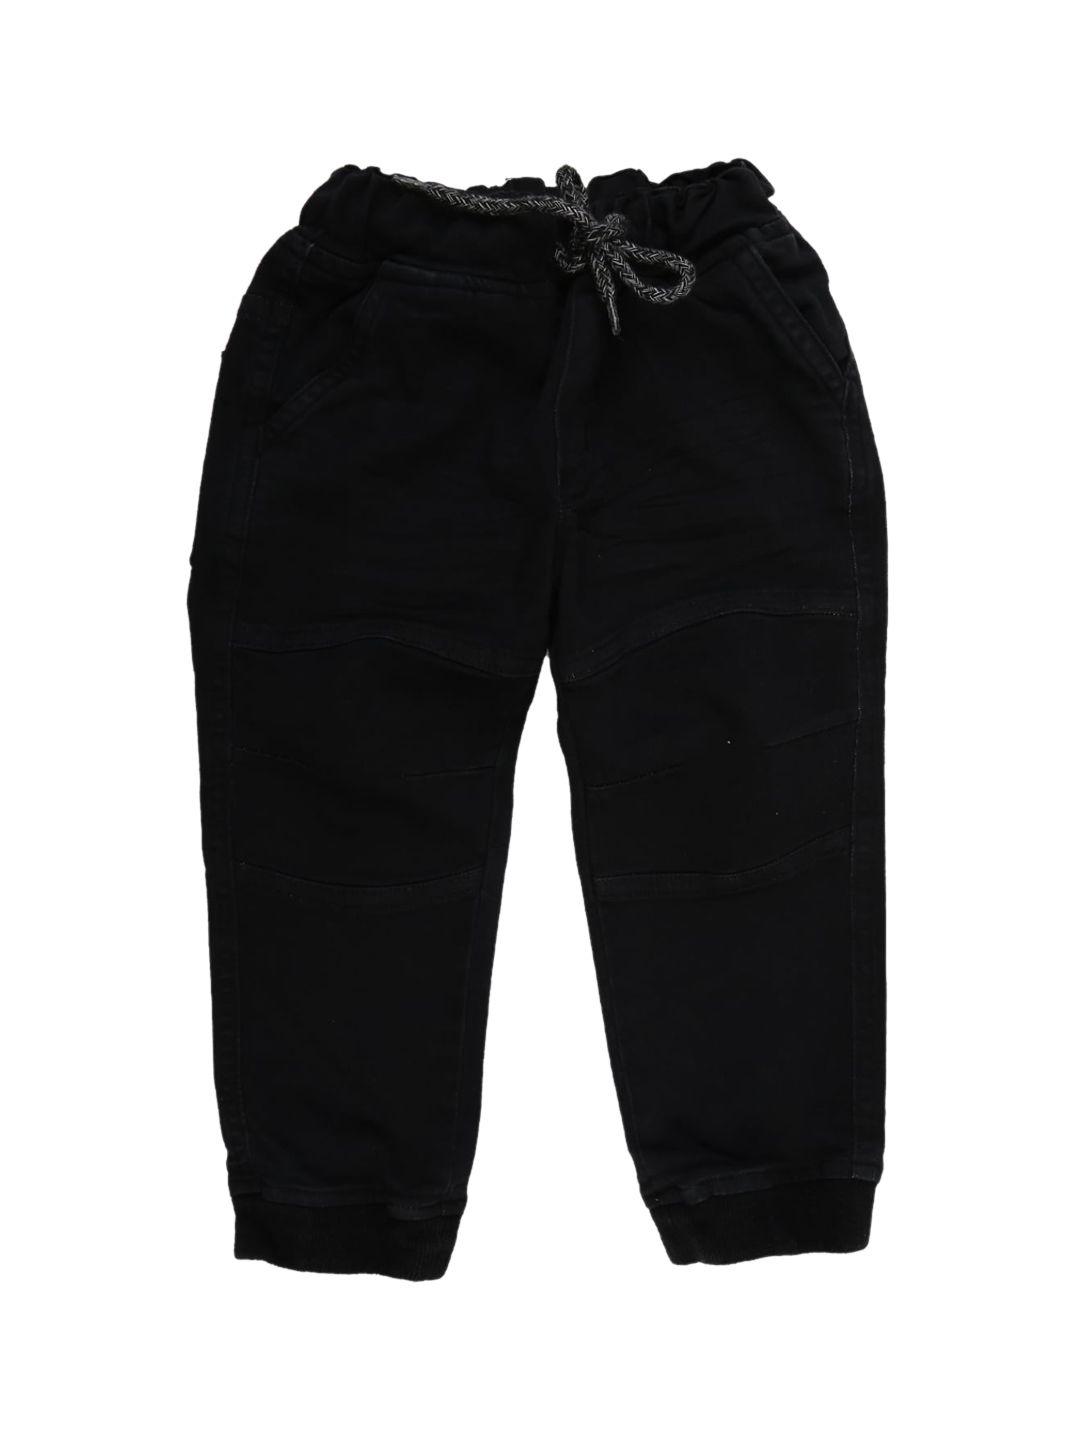 v-mart boys black joggers trousers